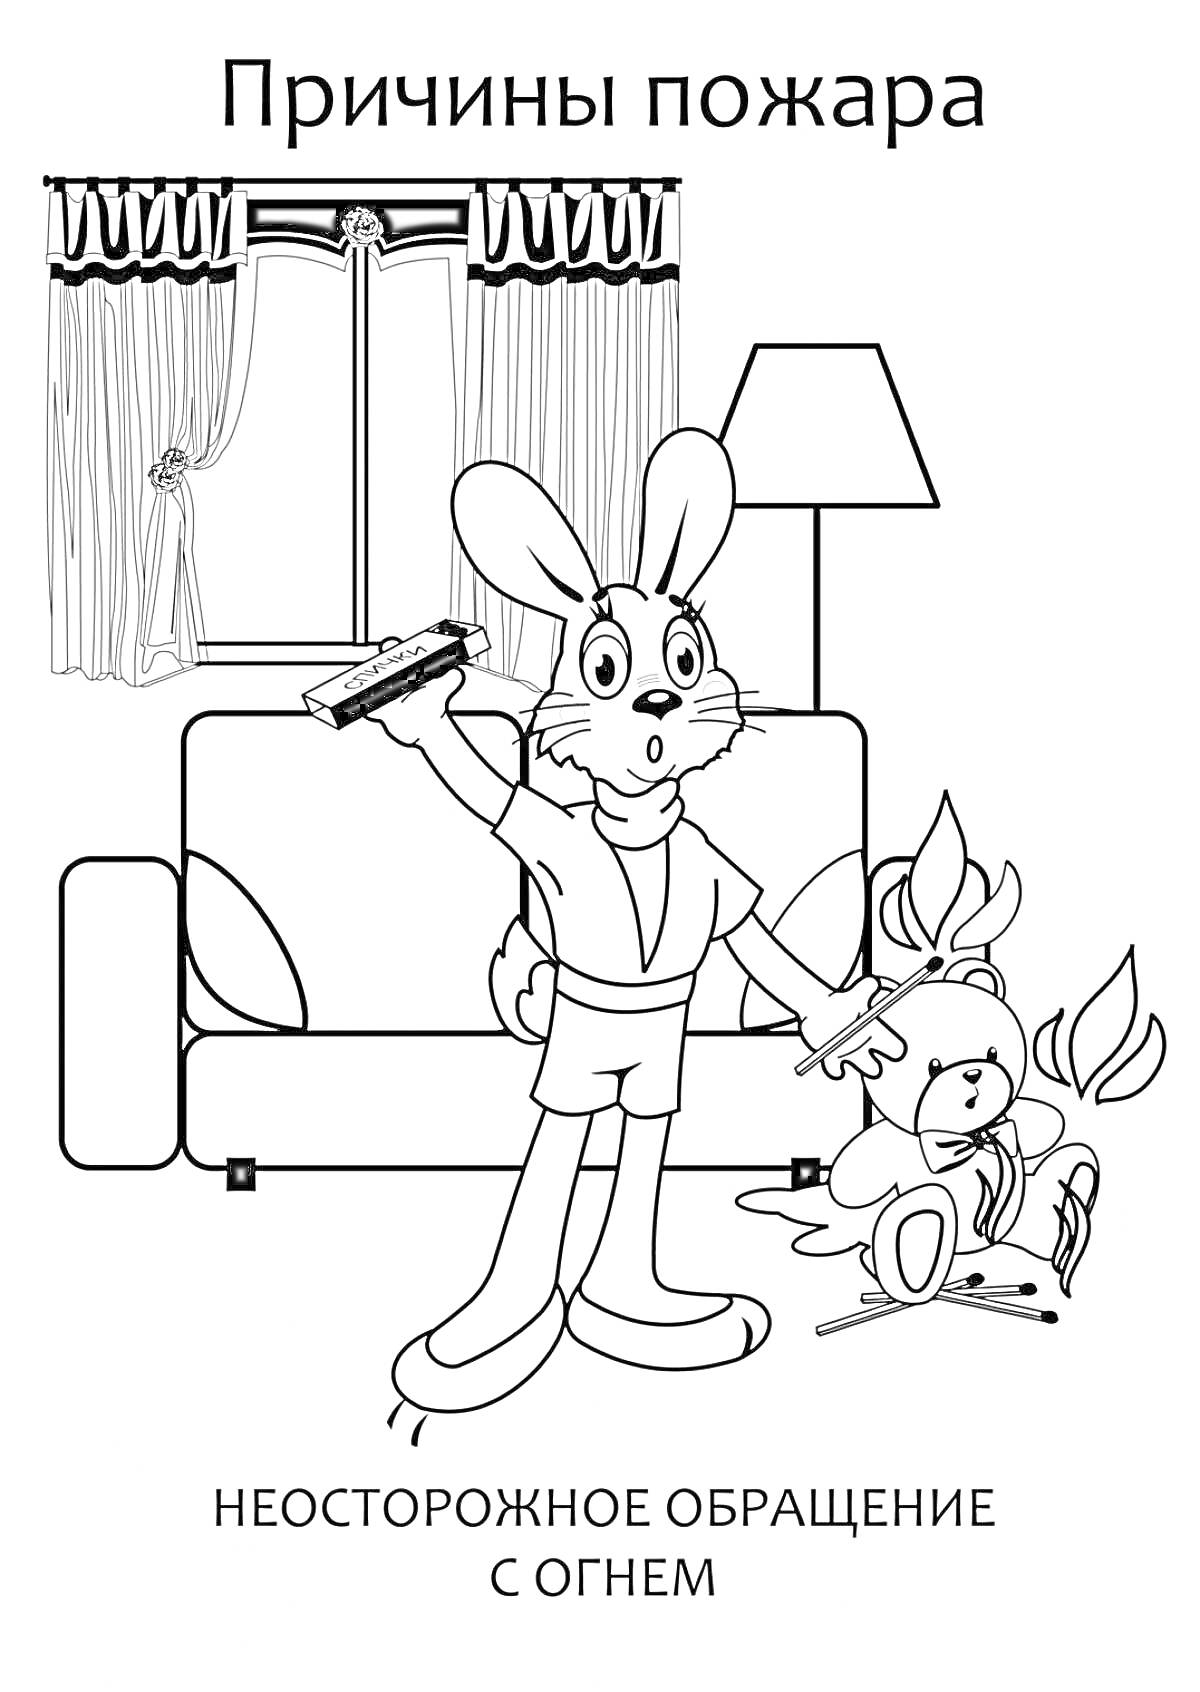 Кролик в гостиной с горящим игрушечным мишкой и сигаретой в лапе, стоящий на фоне дивана, торшера и окна с занавесками.